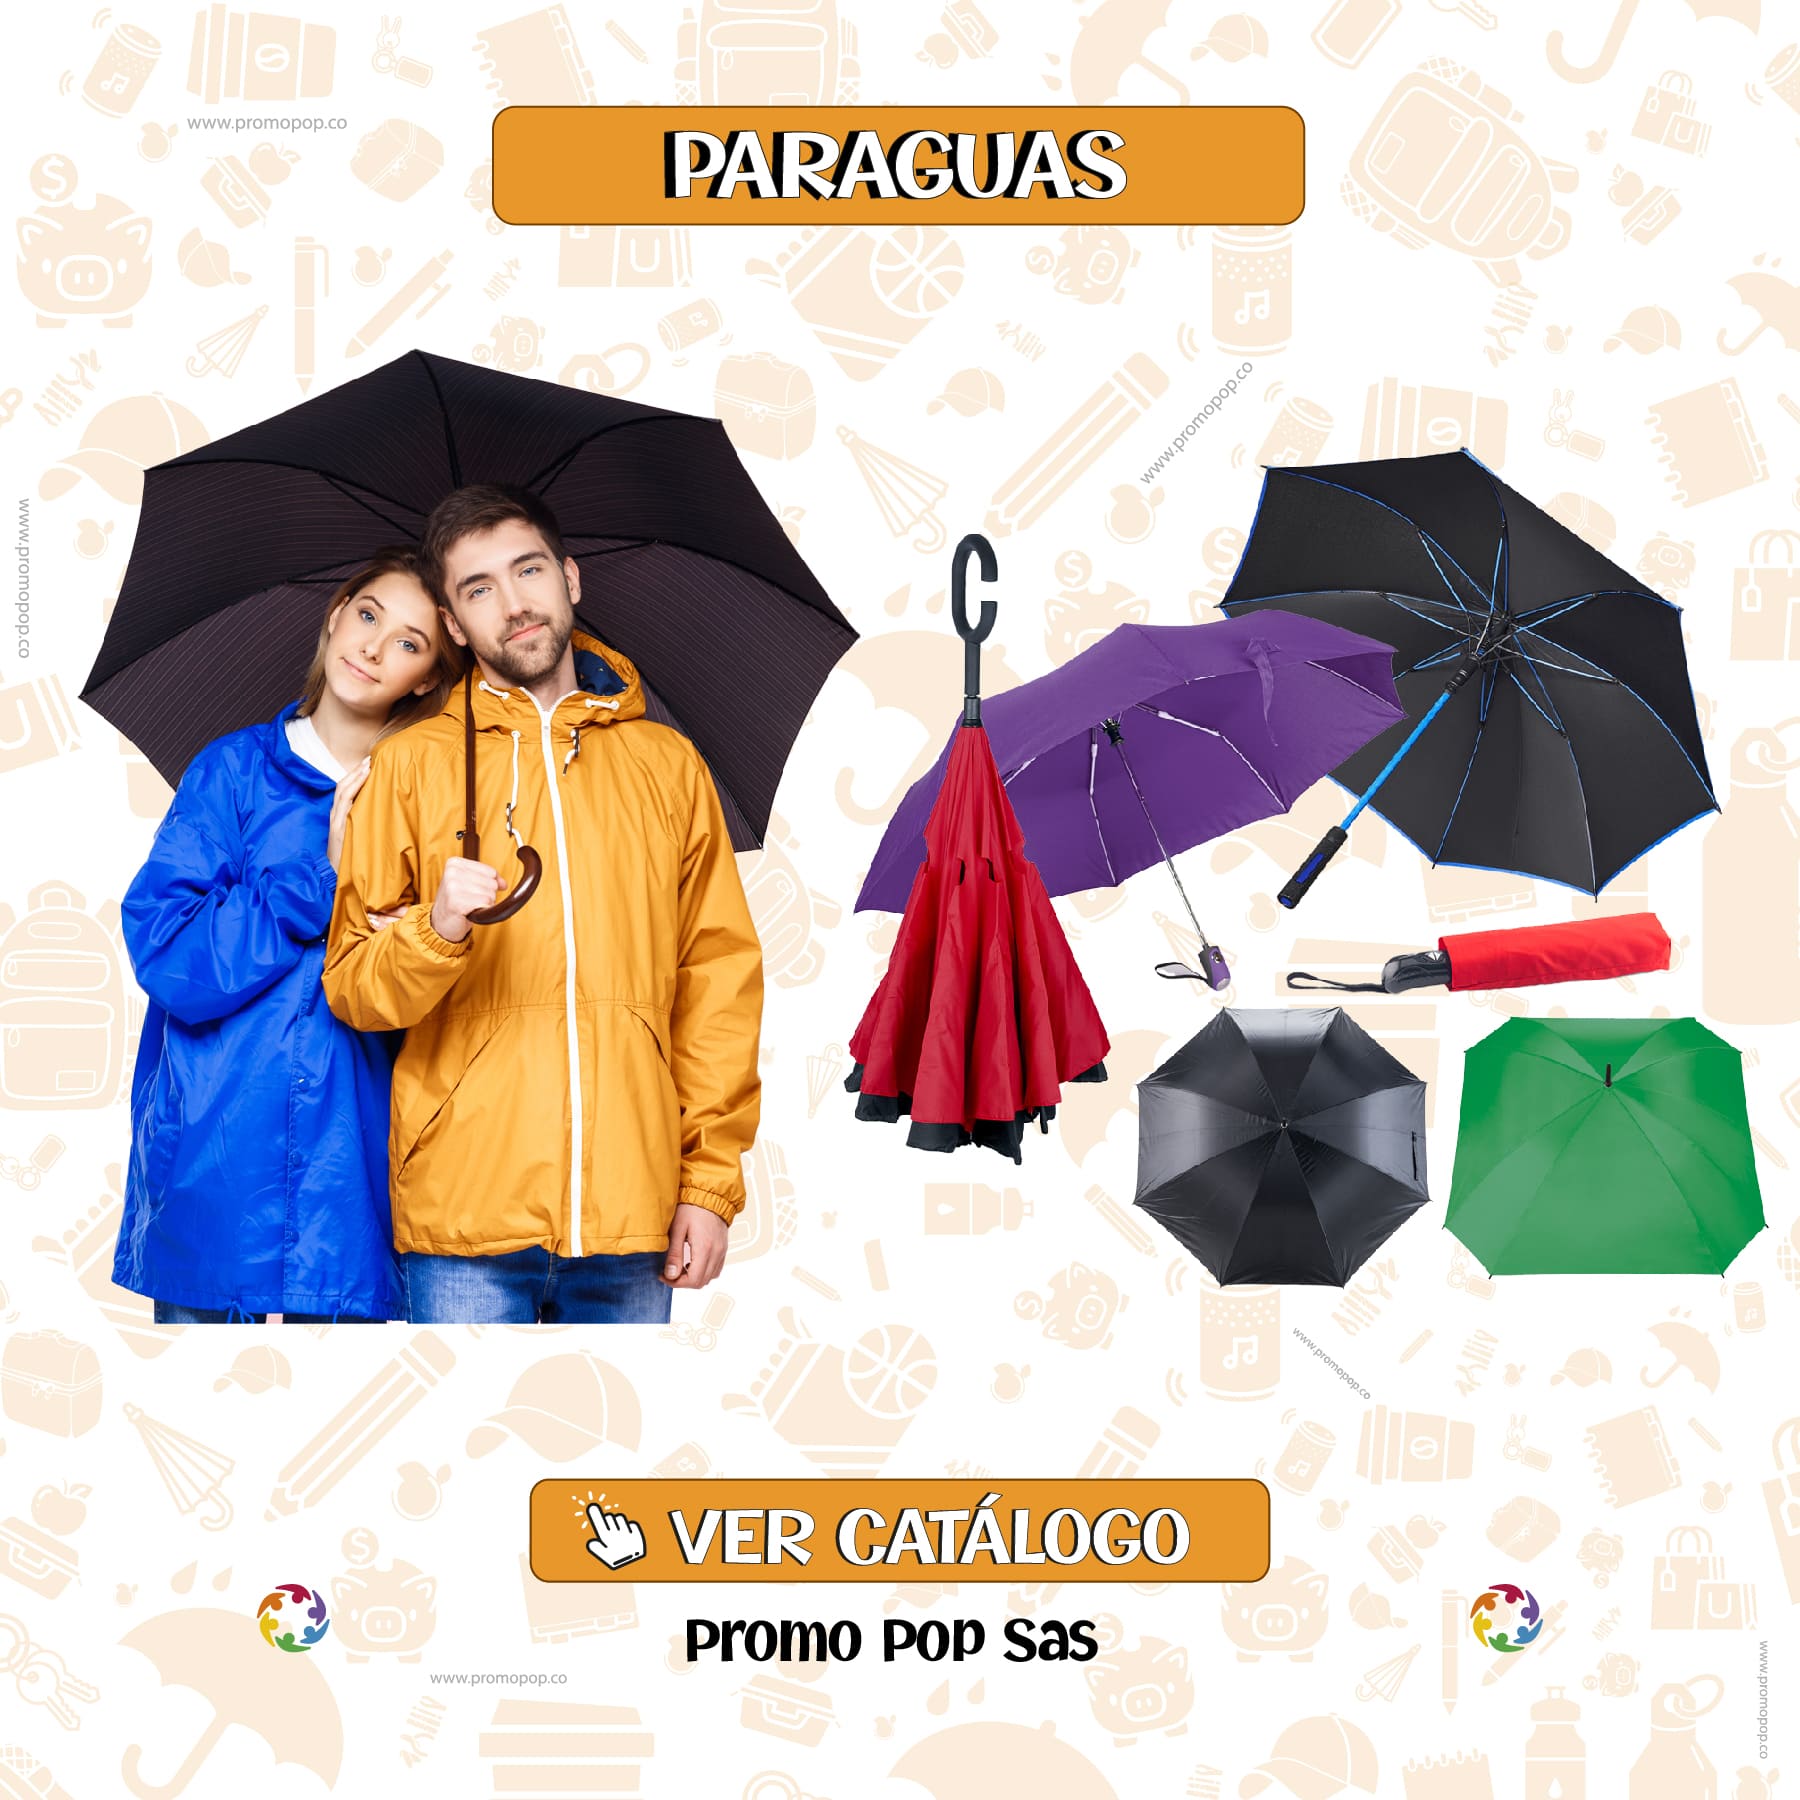 Paraguas invertidos Decathlon: el accesorio perfecto para protegerte de la lluvia con estilo y funcionalidad